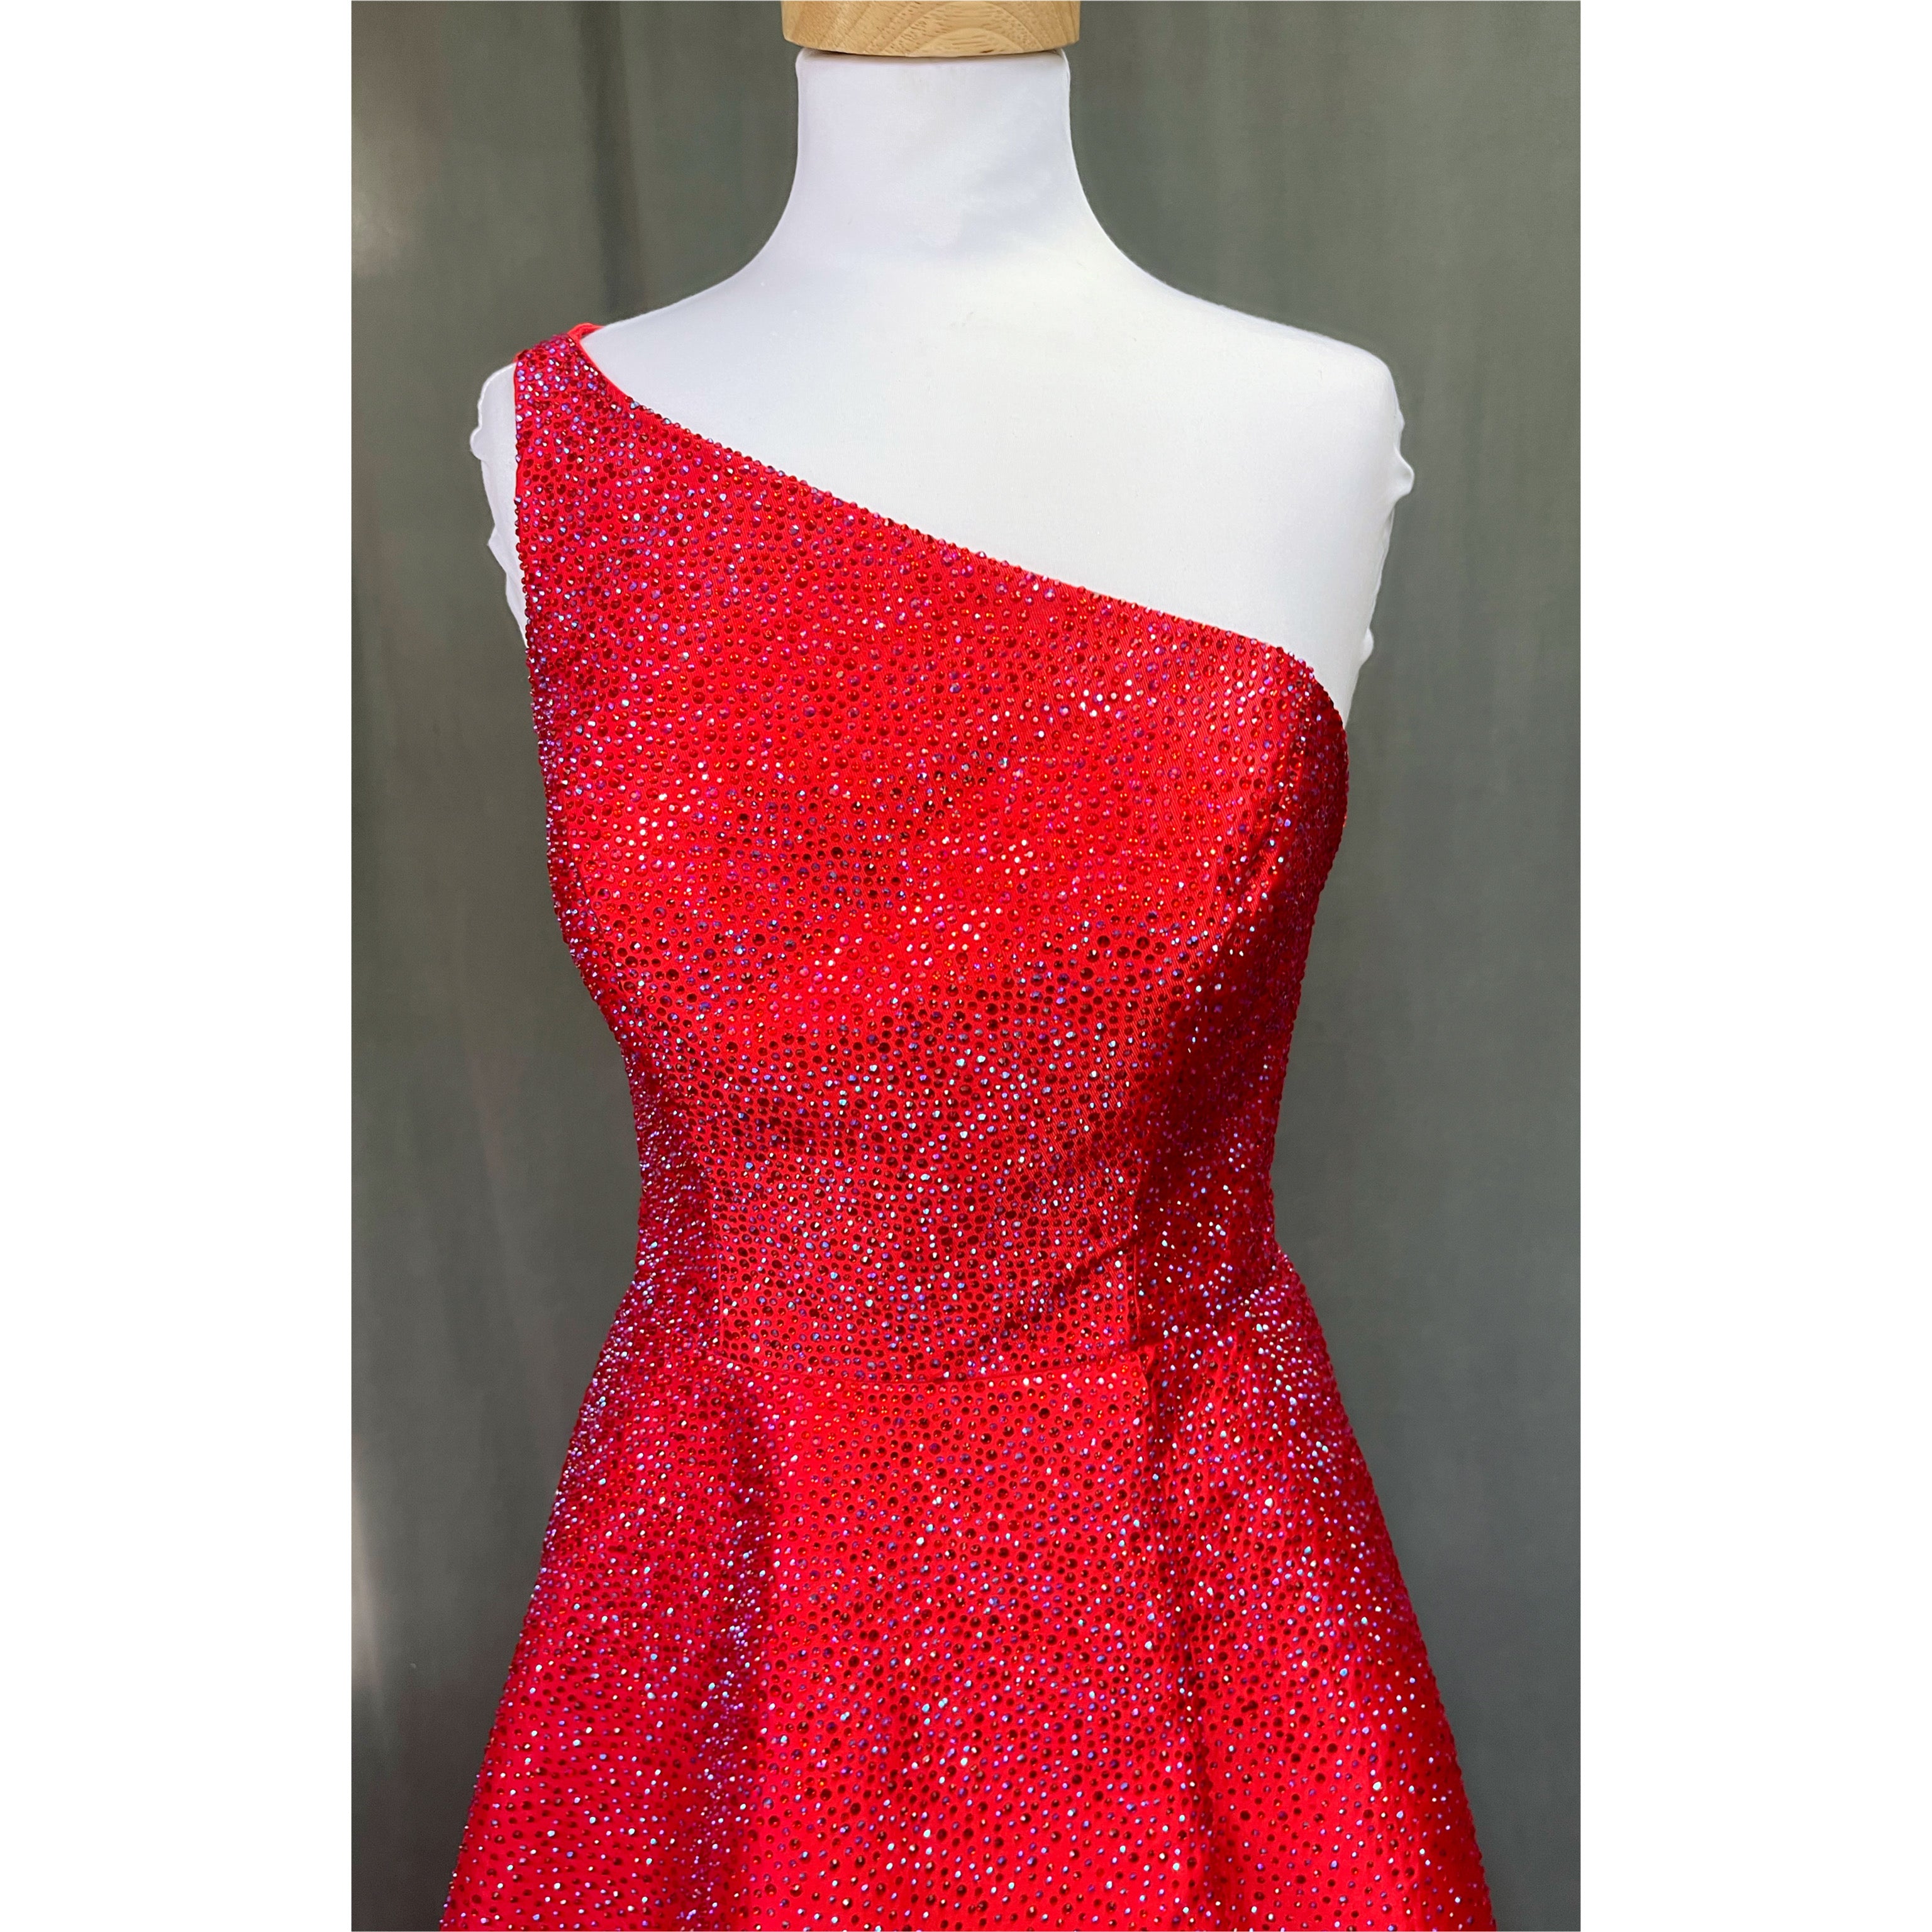 Sherri Hill red dress, size 8